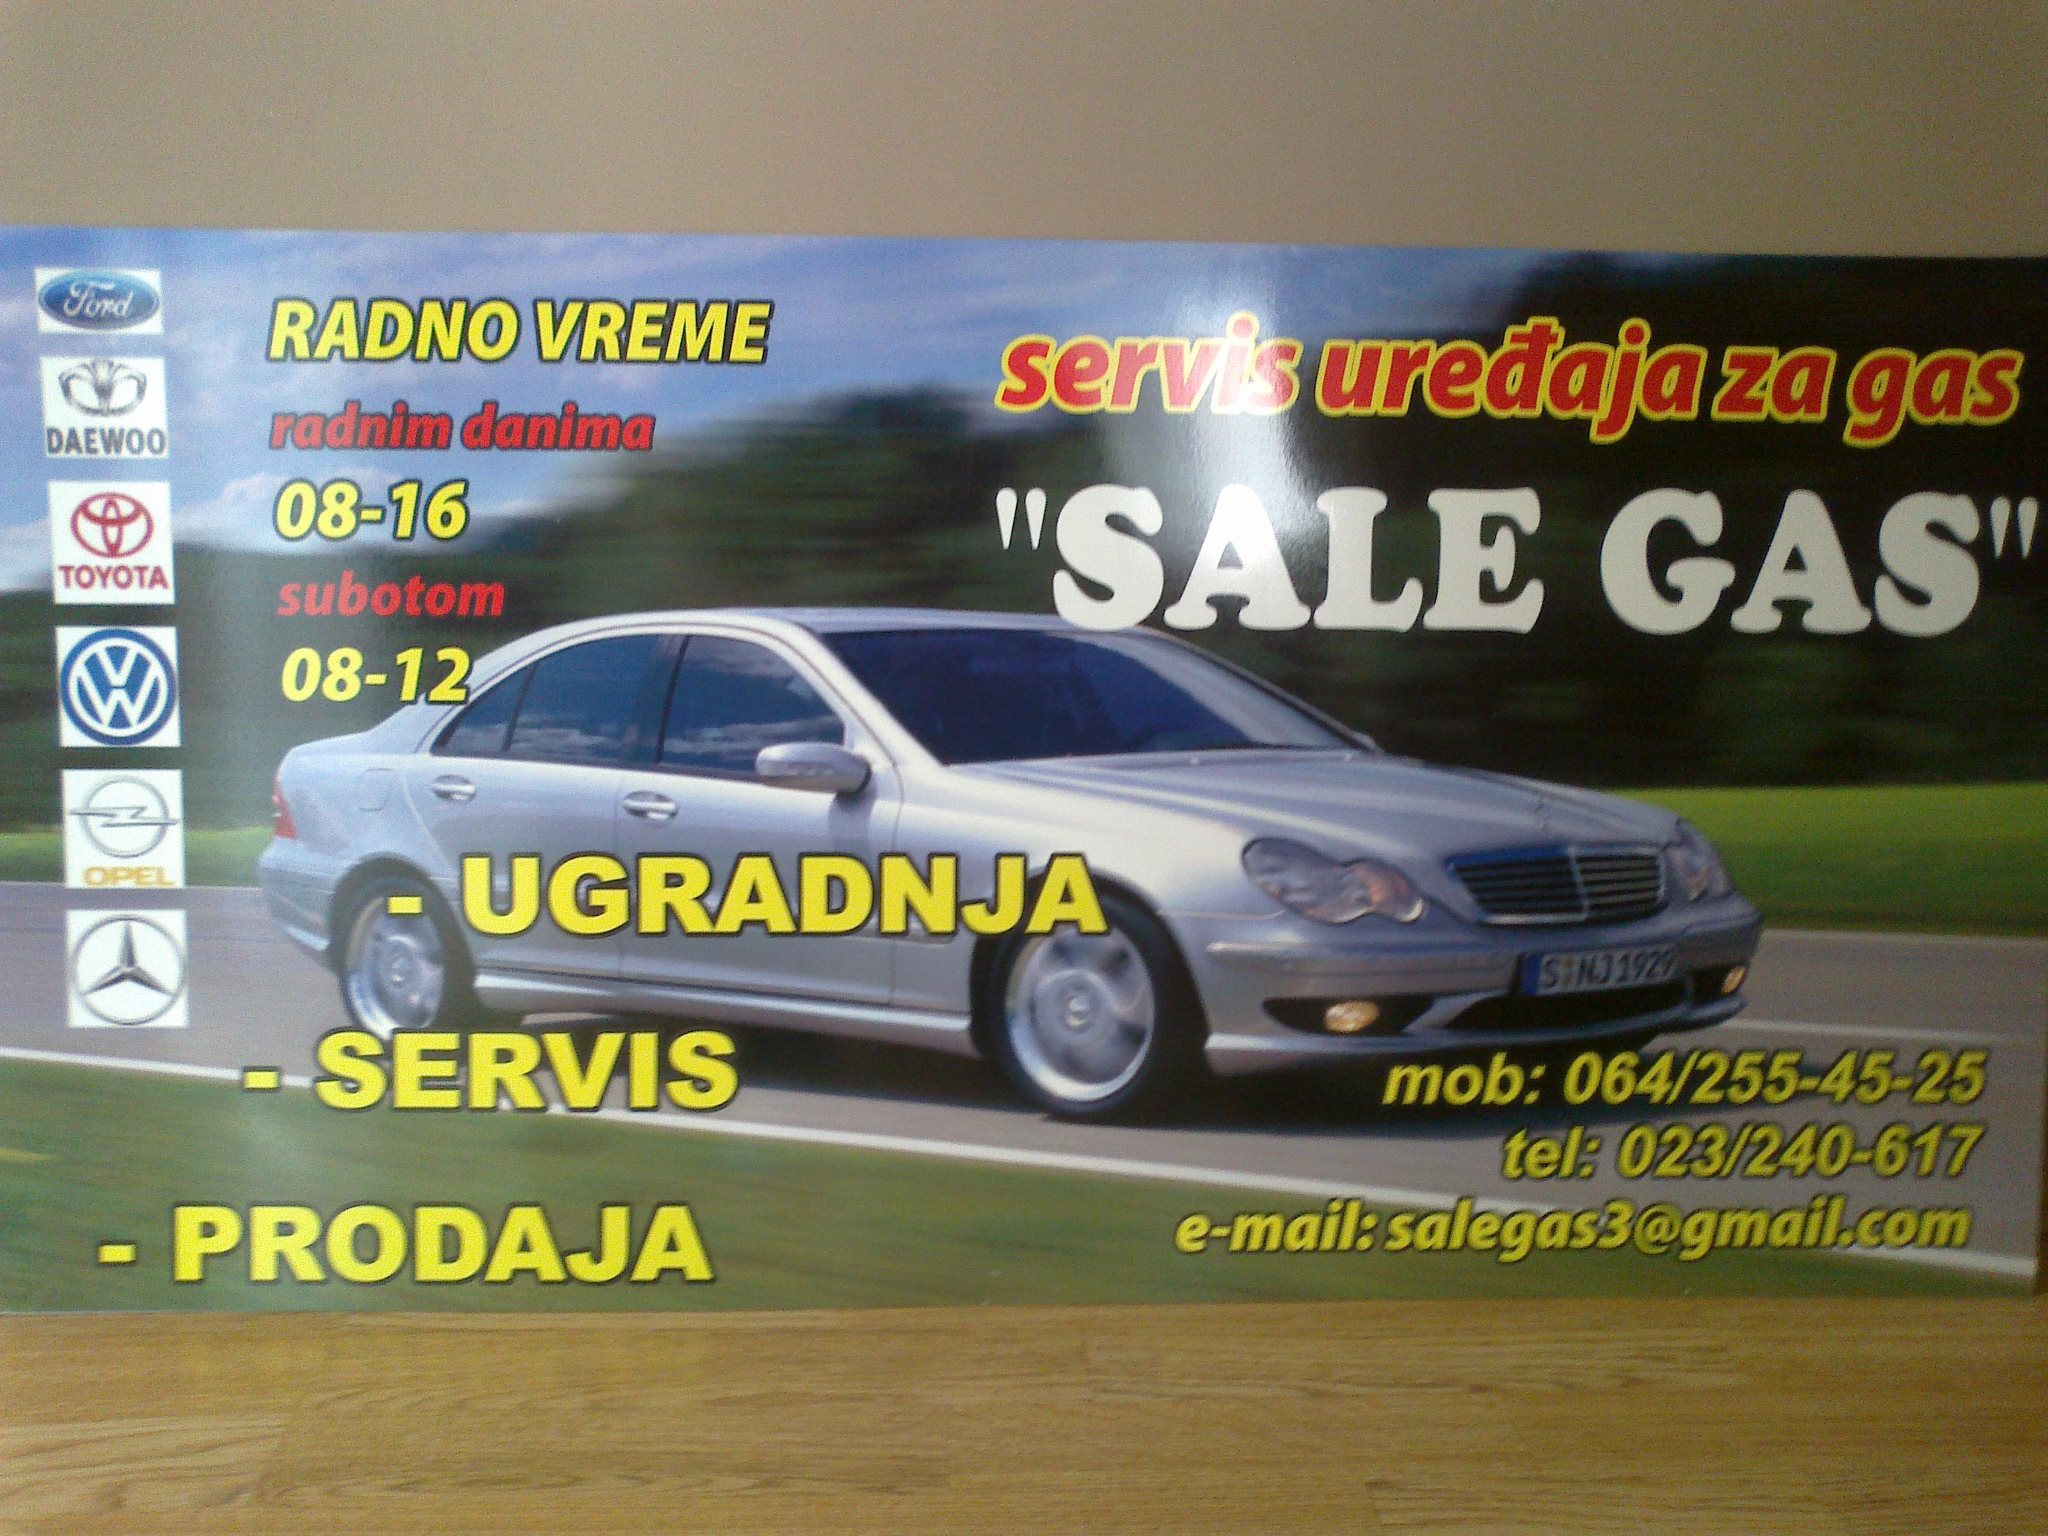 Auto gas servis Sale Gas